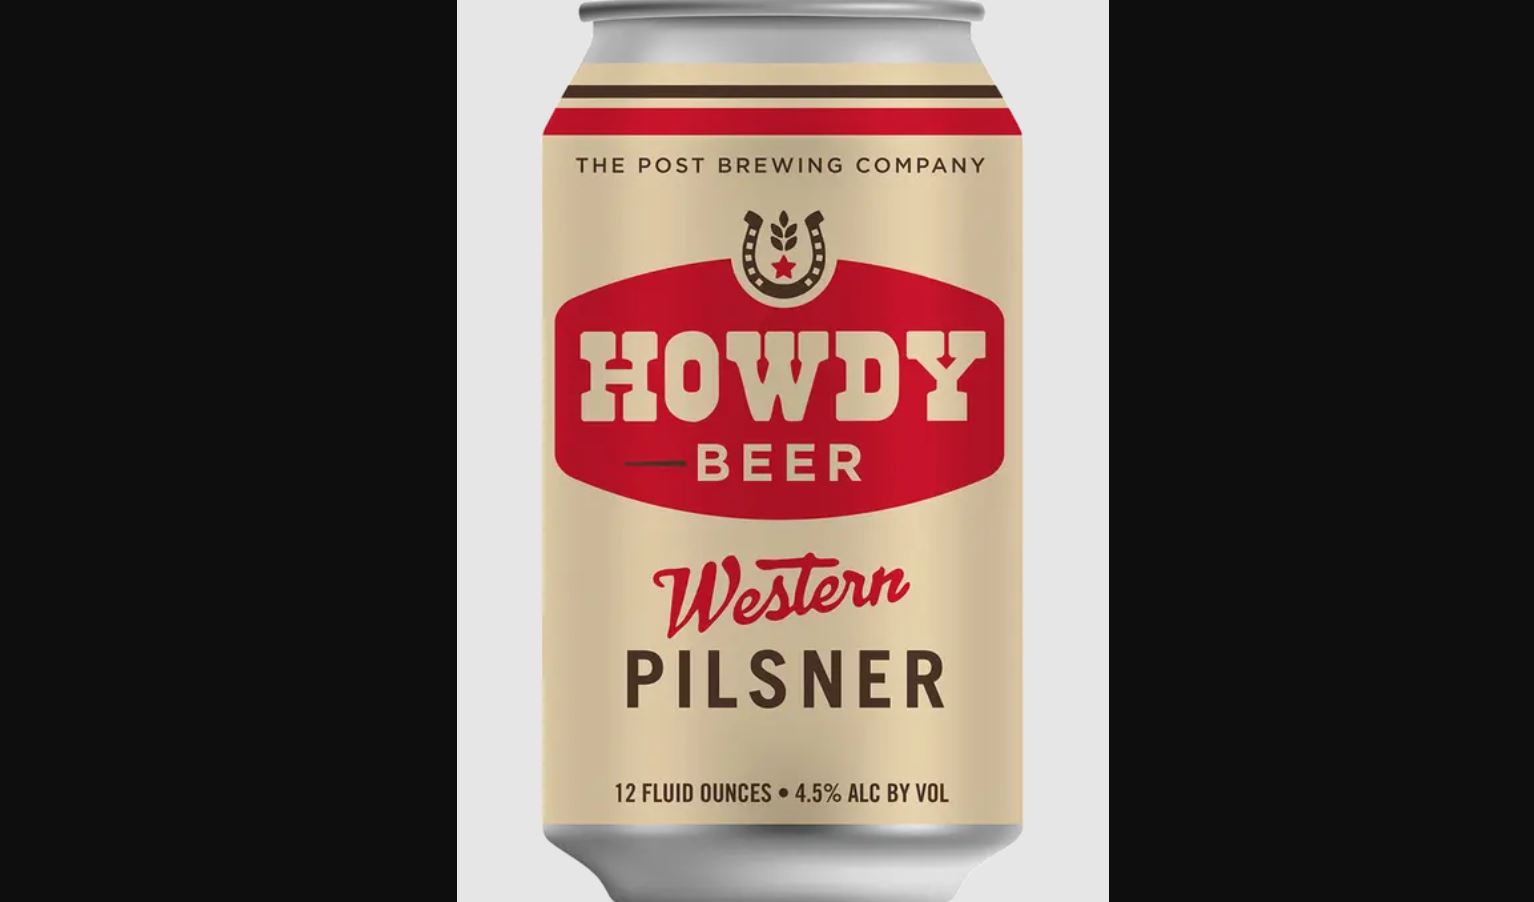 Howdy Beer Western Pilsner